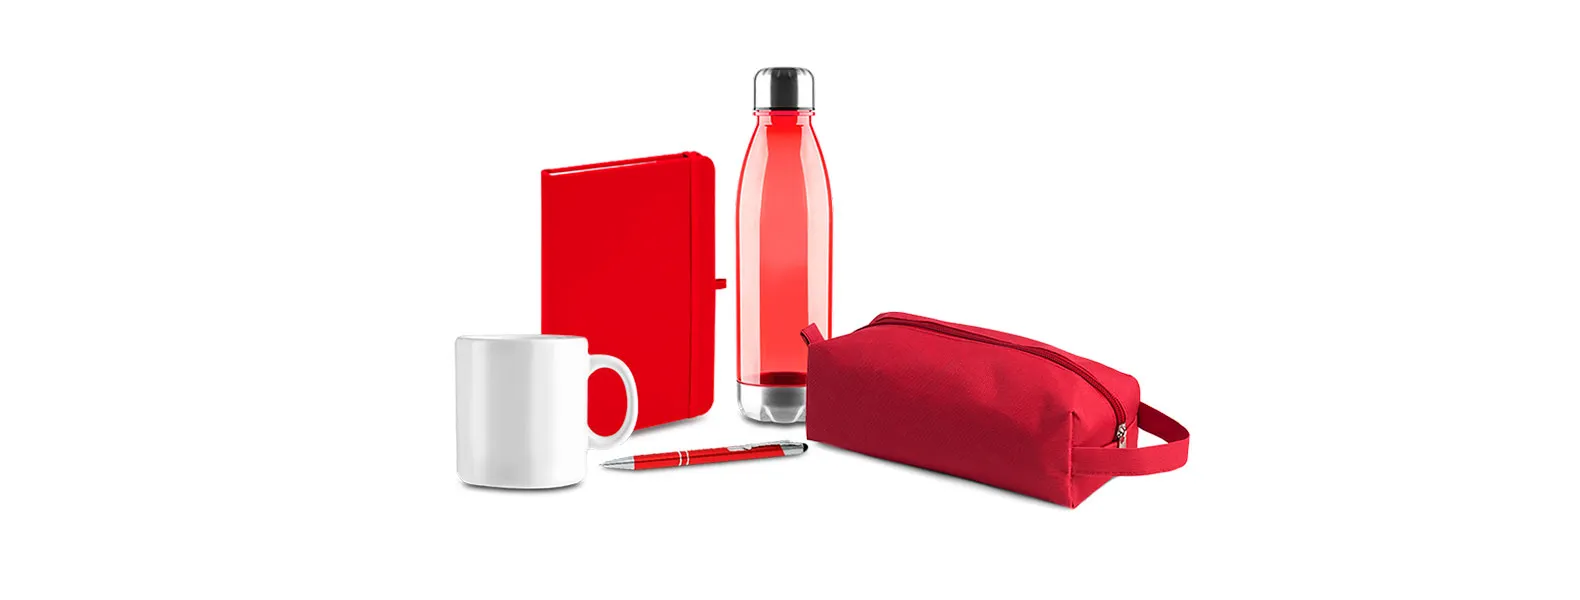 Kit composto por necessaire em Nylon vermelha; garrafa em Policarbonato vermelha; caneca em cerâmica branca; protetor para webcam/celular em PP vermelho; caderno para anotações vermelho com capa dura e caneta esferográfica em alumínio vermelha.